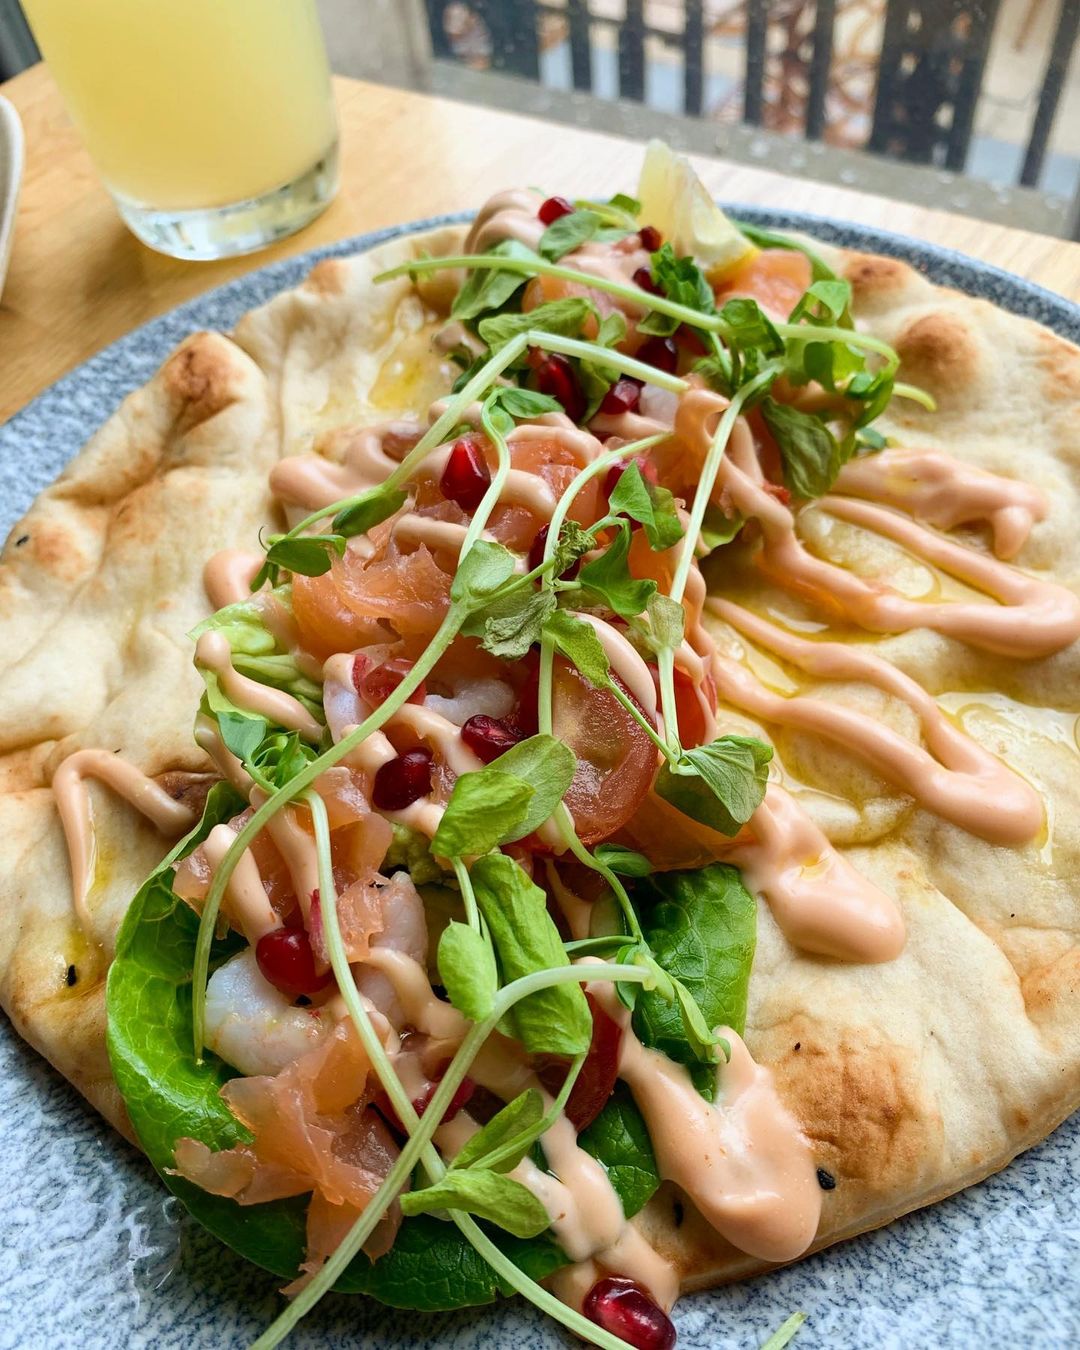 salmon on flatbread with salad.